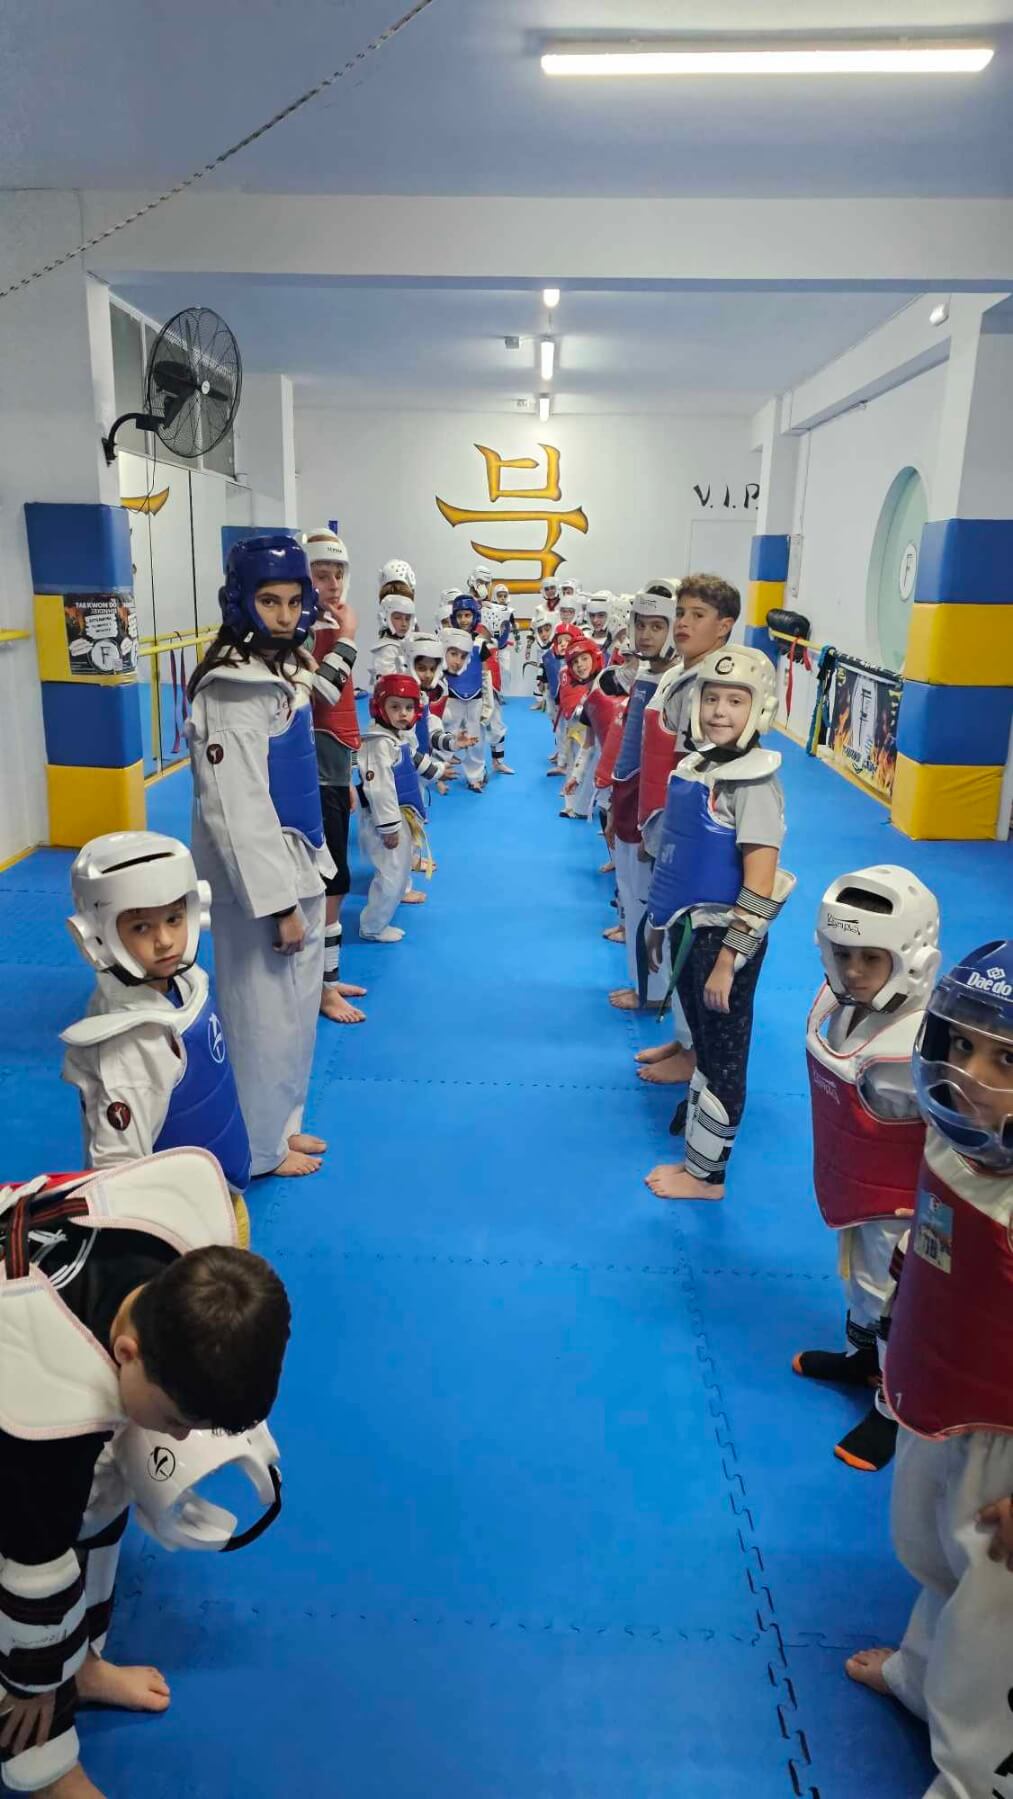 drakas-team-zografou-taekwondo-filliki-proponisi-sportshunter-1